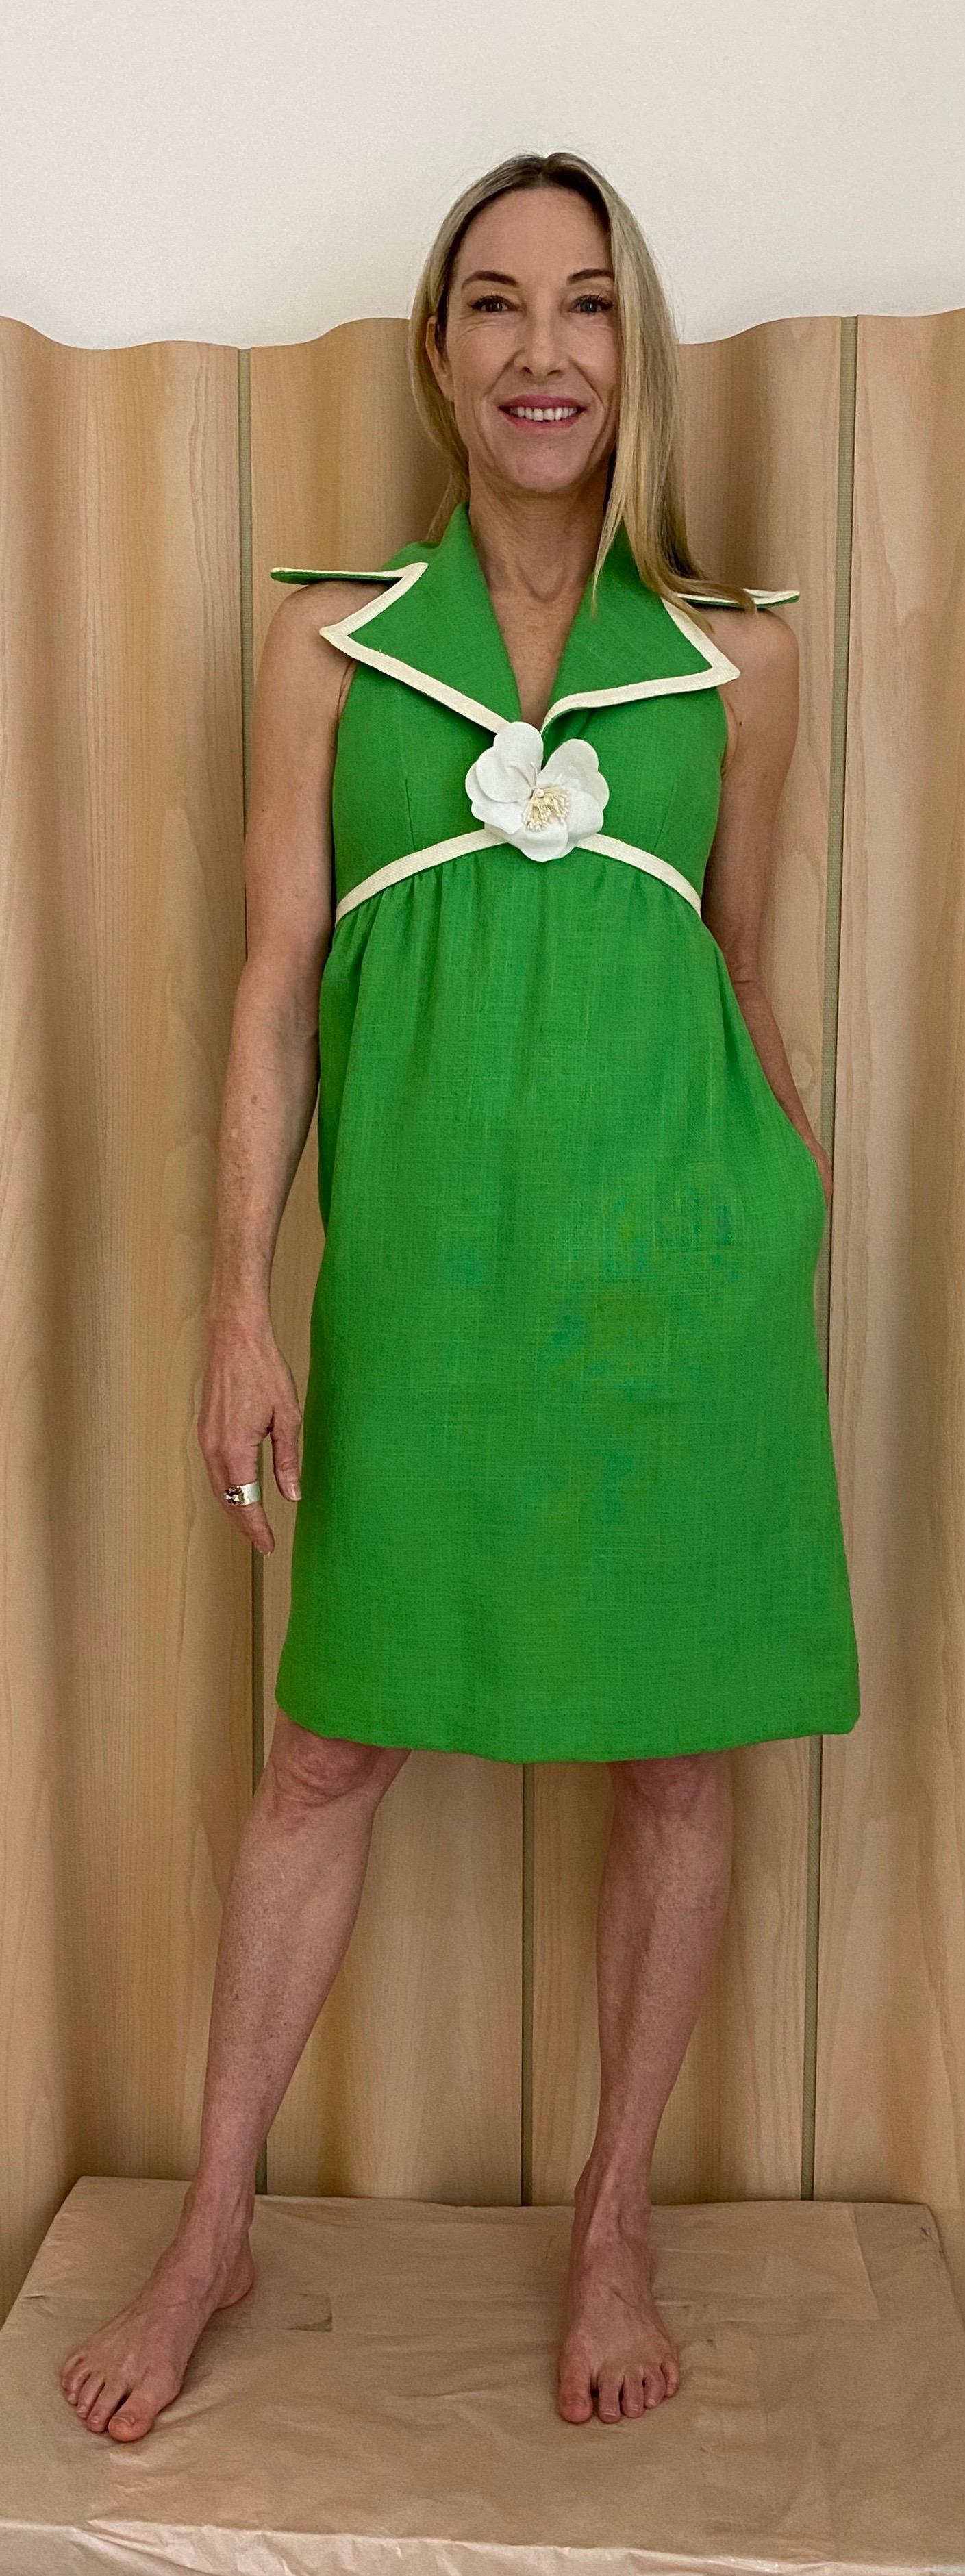 Linge vert Mollie Parnis des années 1960  robe de cocktail de jour.  La robe a une fermeture éclair en métal.  Entièrement doublé en excellent état. Pas de taches ni de trous. Poches.

Convient parfaitement aux tailles 2/4 / Small.
Poitrine :